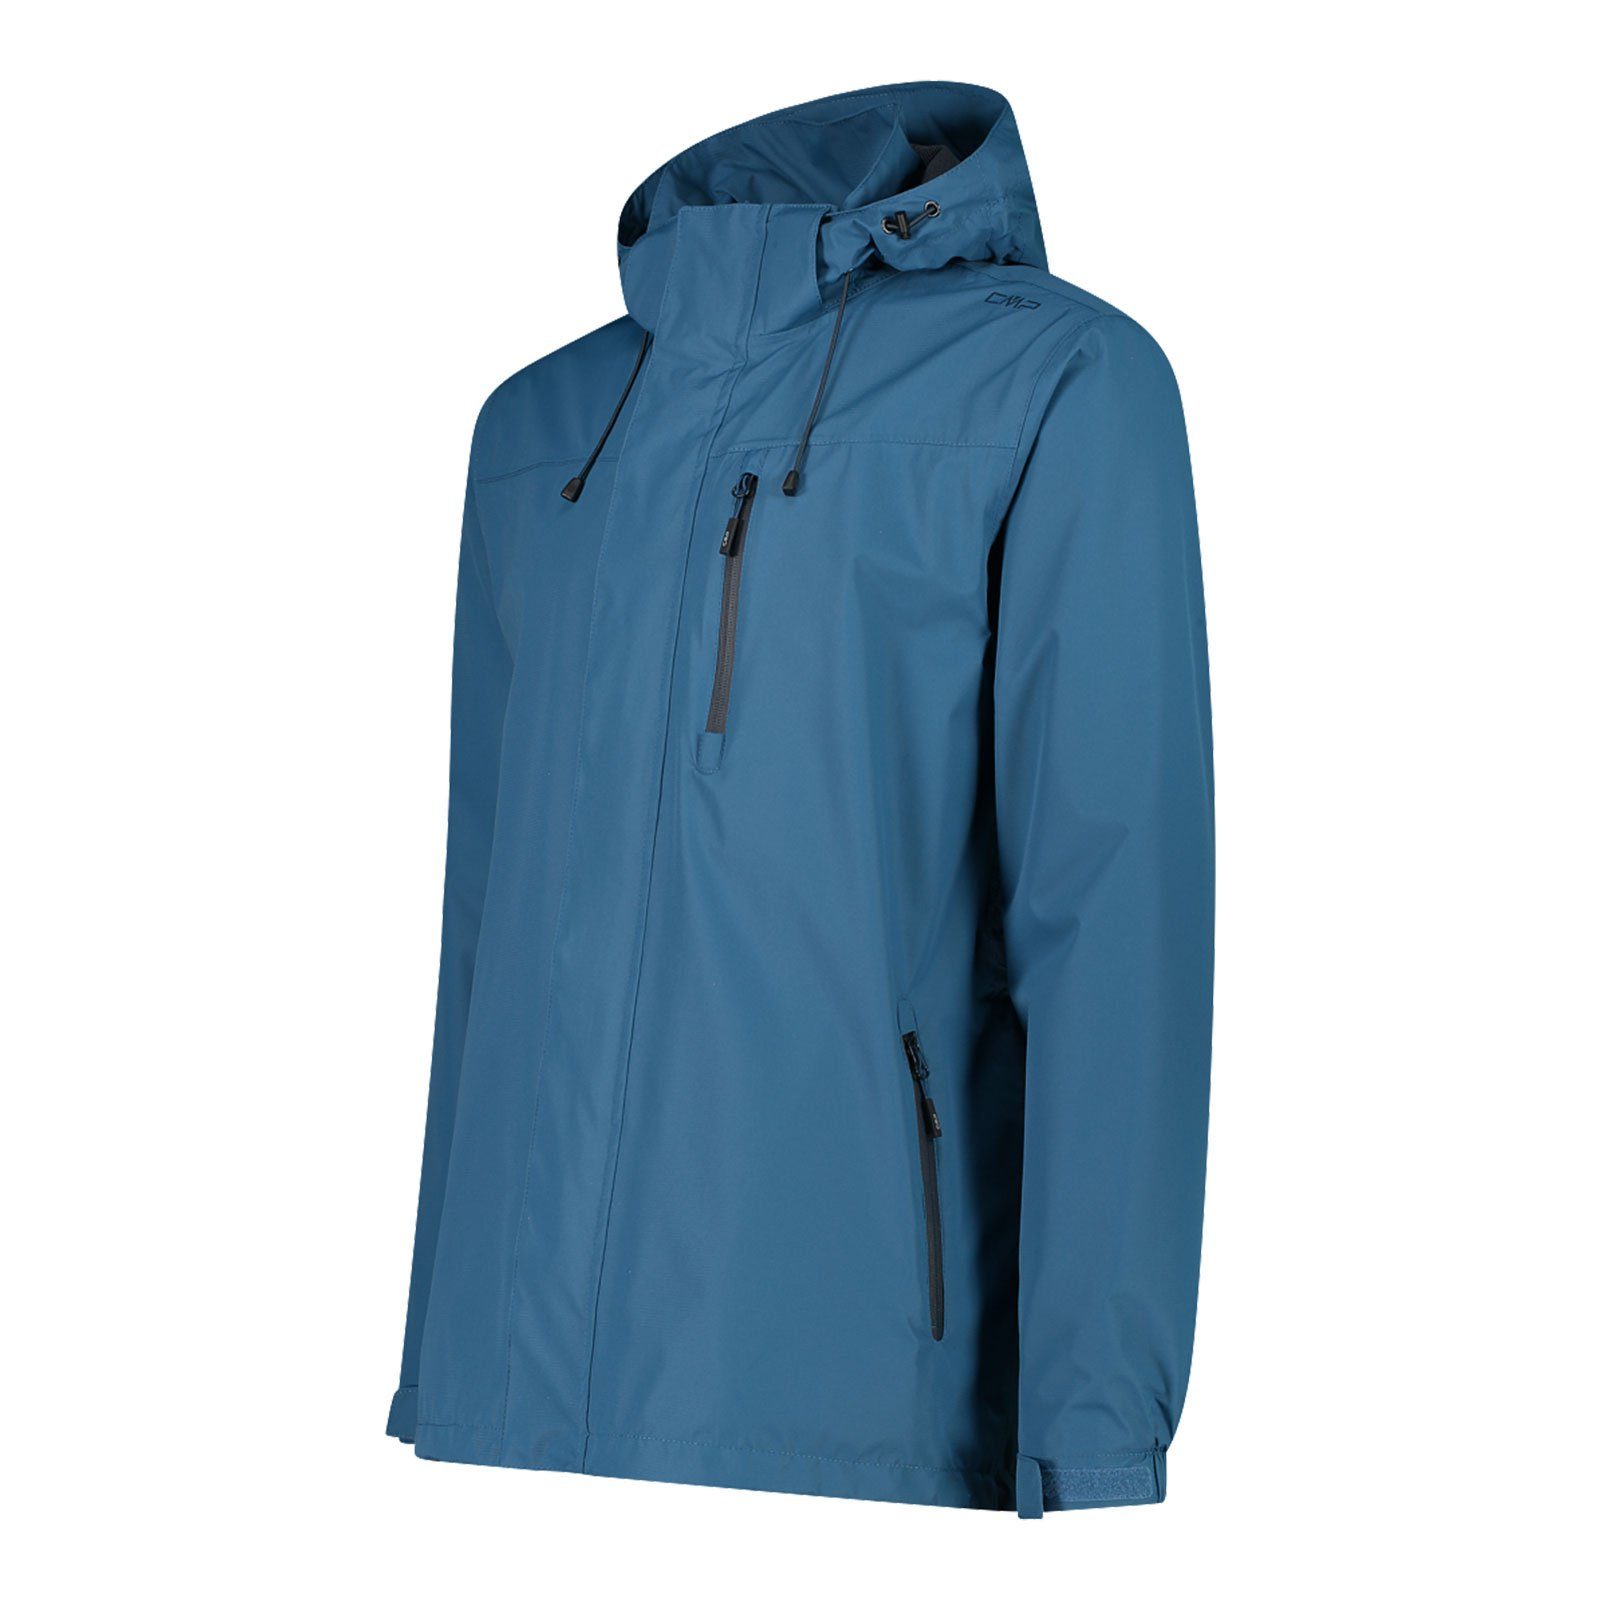 Hood blue zum Verstauen M879 Jacke Jacket CMP integrierter der dusty mit Regenjacke Man Packtasche Zip